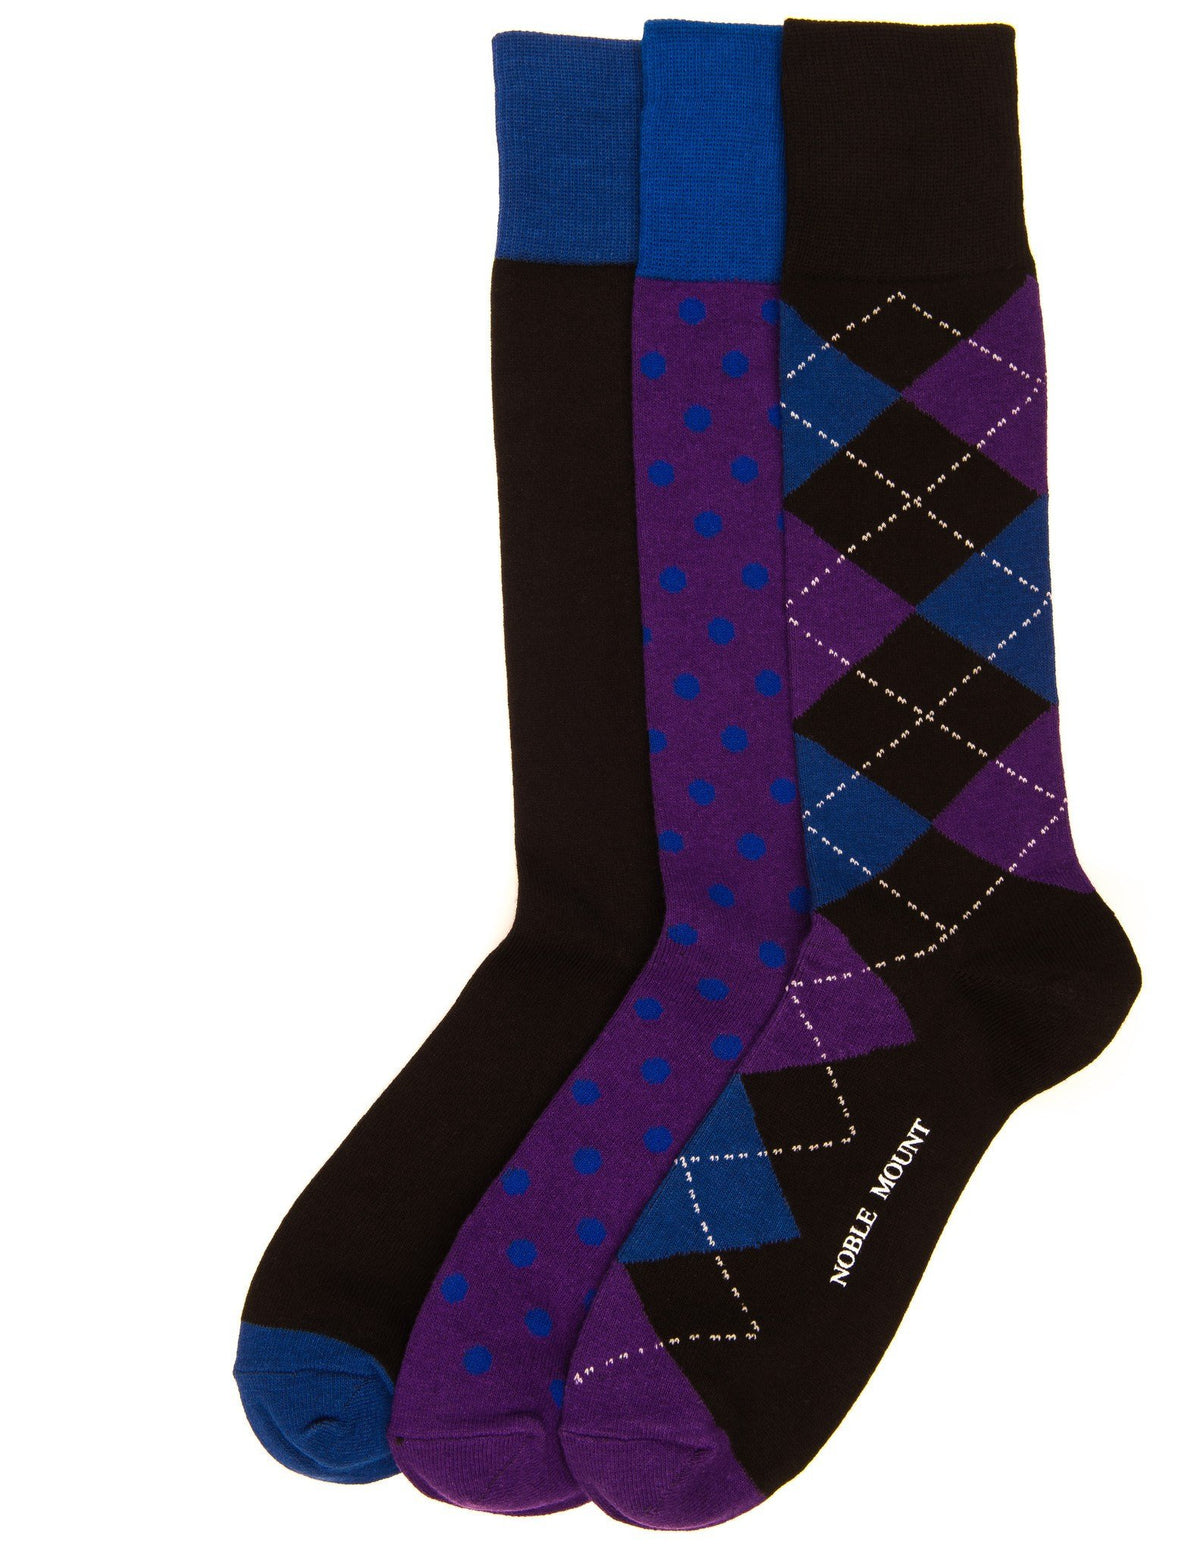 Men's Combed Cotton Dress Socks 3-Pack - Set A10